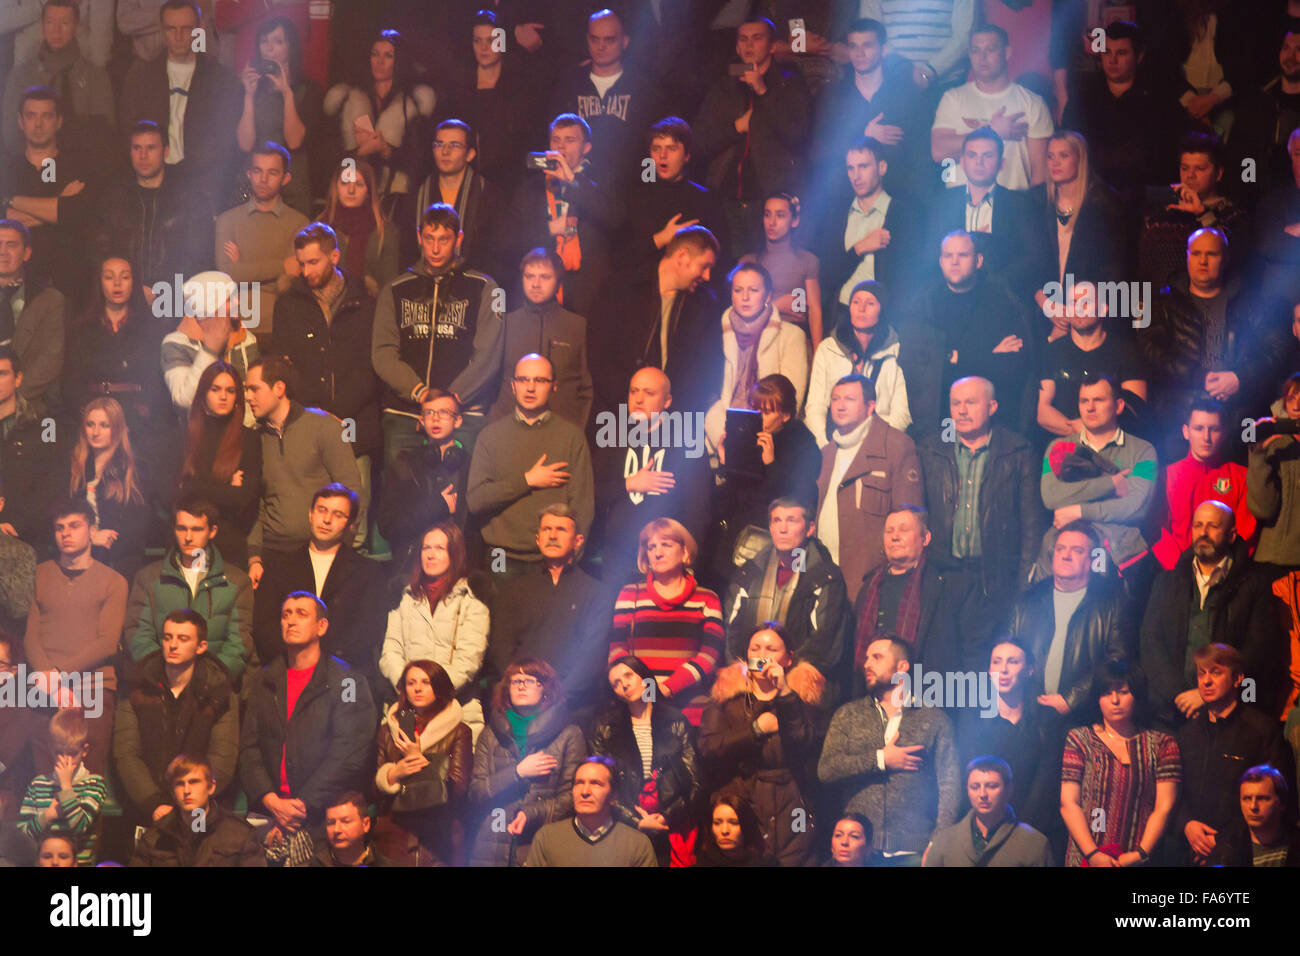 Kiev, Ucraina - 13 dicembre 2014: gente canta l'Inno Nazionale dell'Ucraina prima WBO Cruiserweight intercontinentale titolo di lotta tra Oleksandr Usyk (Ucraina) e Danie Venter (Sud Africa) Foto Stock